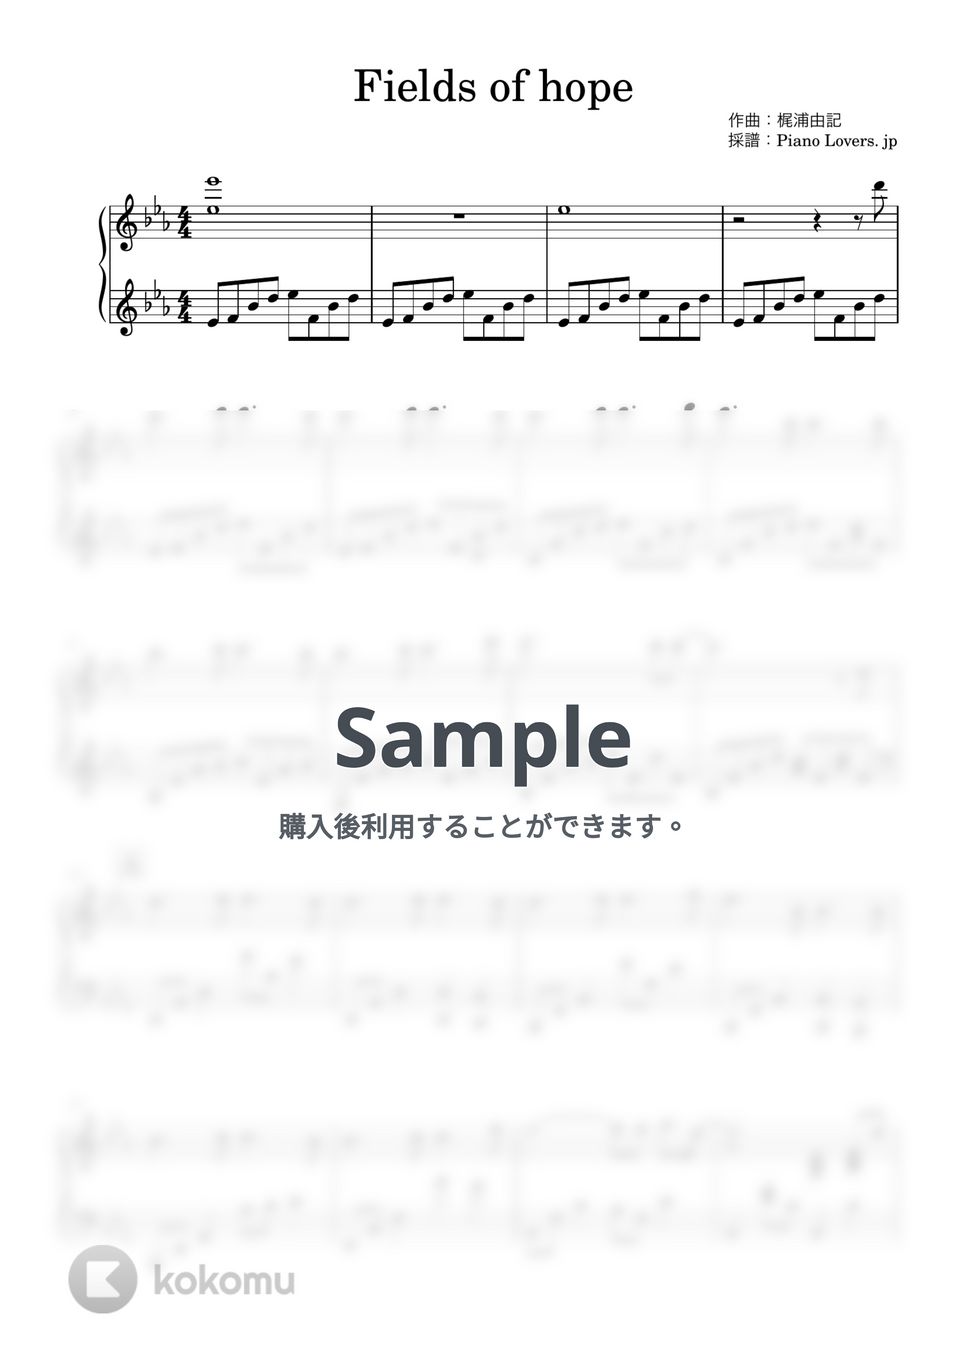 ラクス・クライン - Fields of hope (機動戦士ガンダム) by Piano Lovers. jp